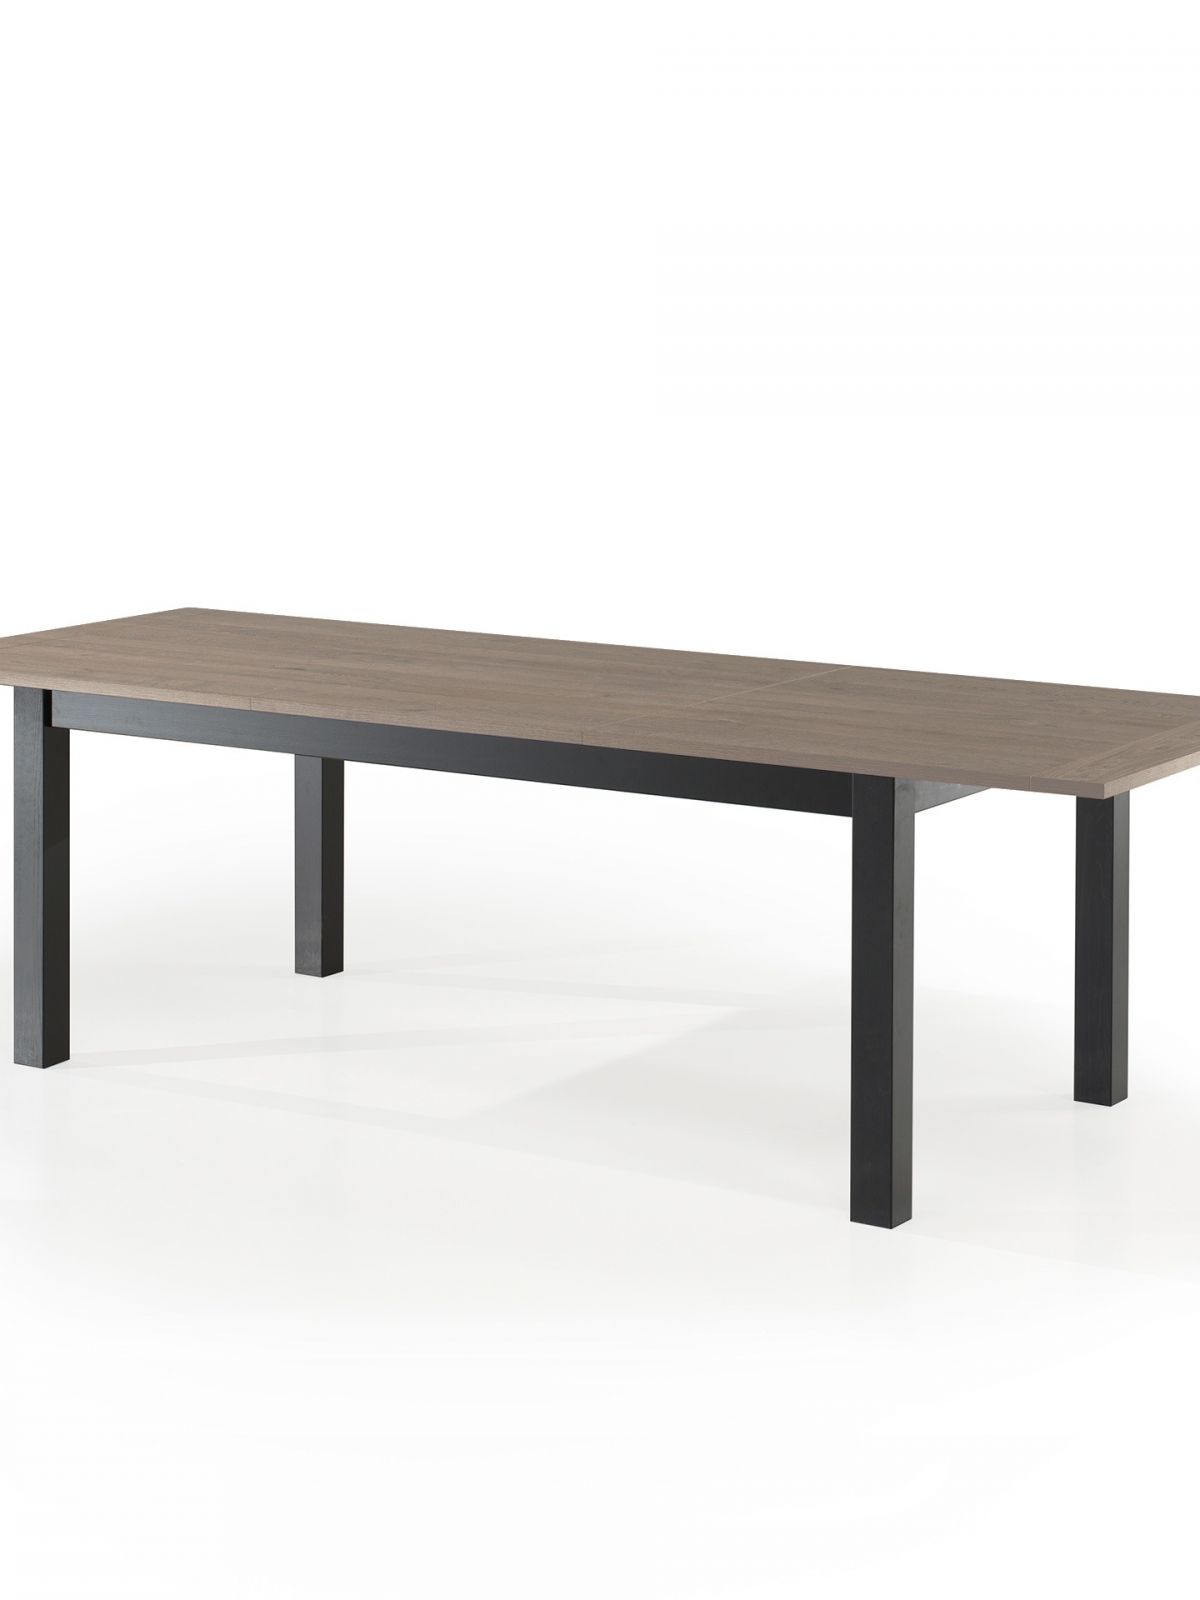 Table avec allonge rectangulaire 2m - 4 pieds